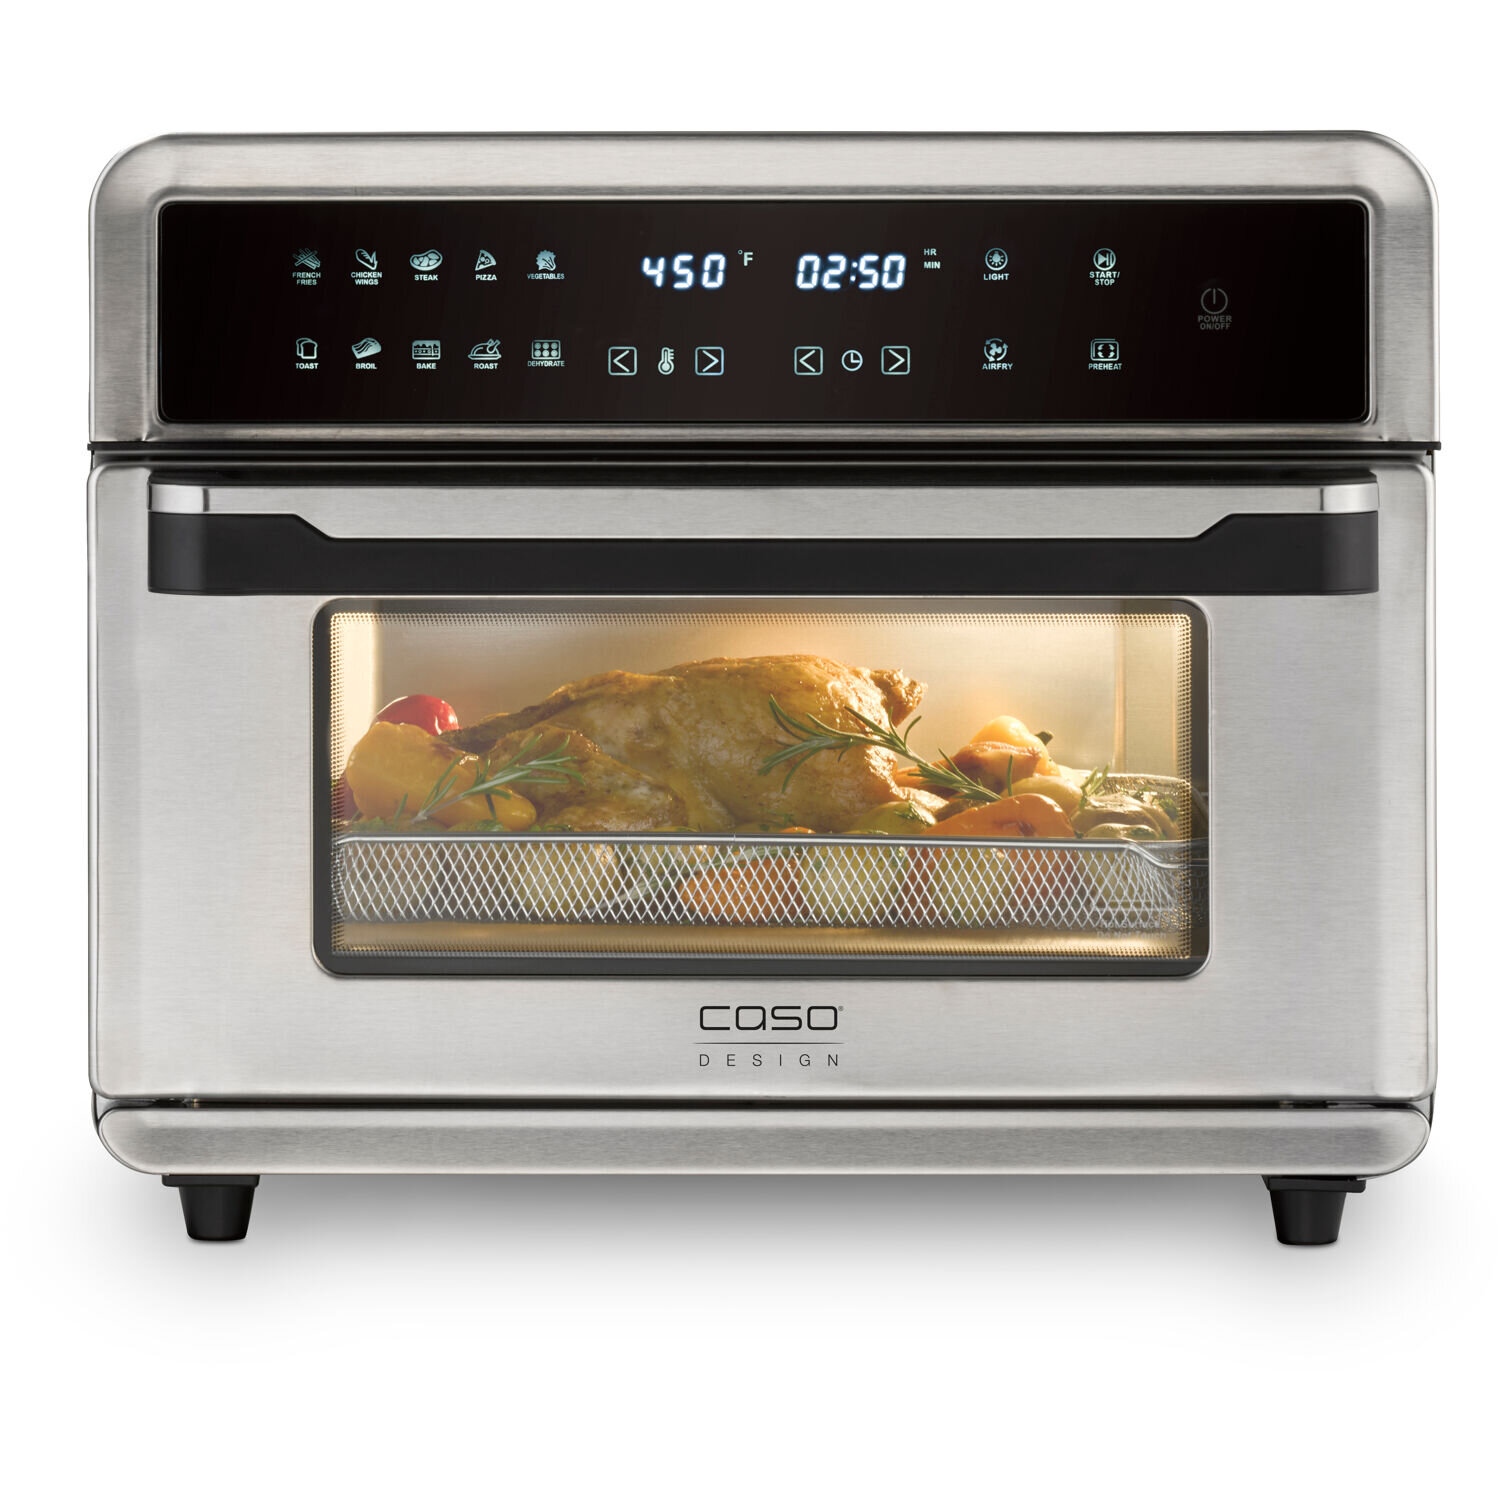 https://assets.wfcdn.com/im/20116718/compr-r85/1313/131386543/26-qts-air-fryer-toaster-oven.jpg